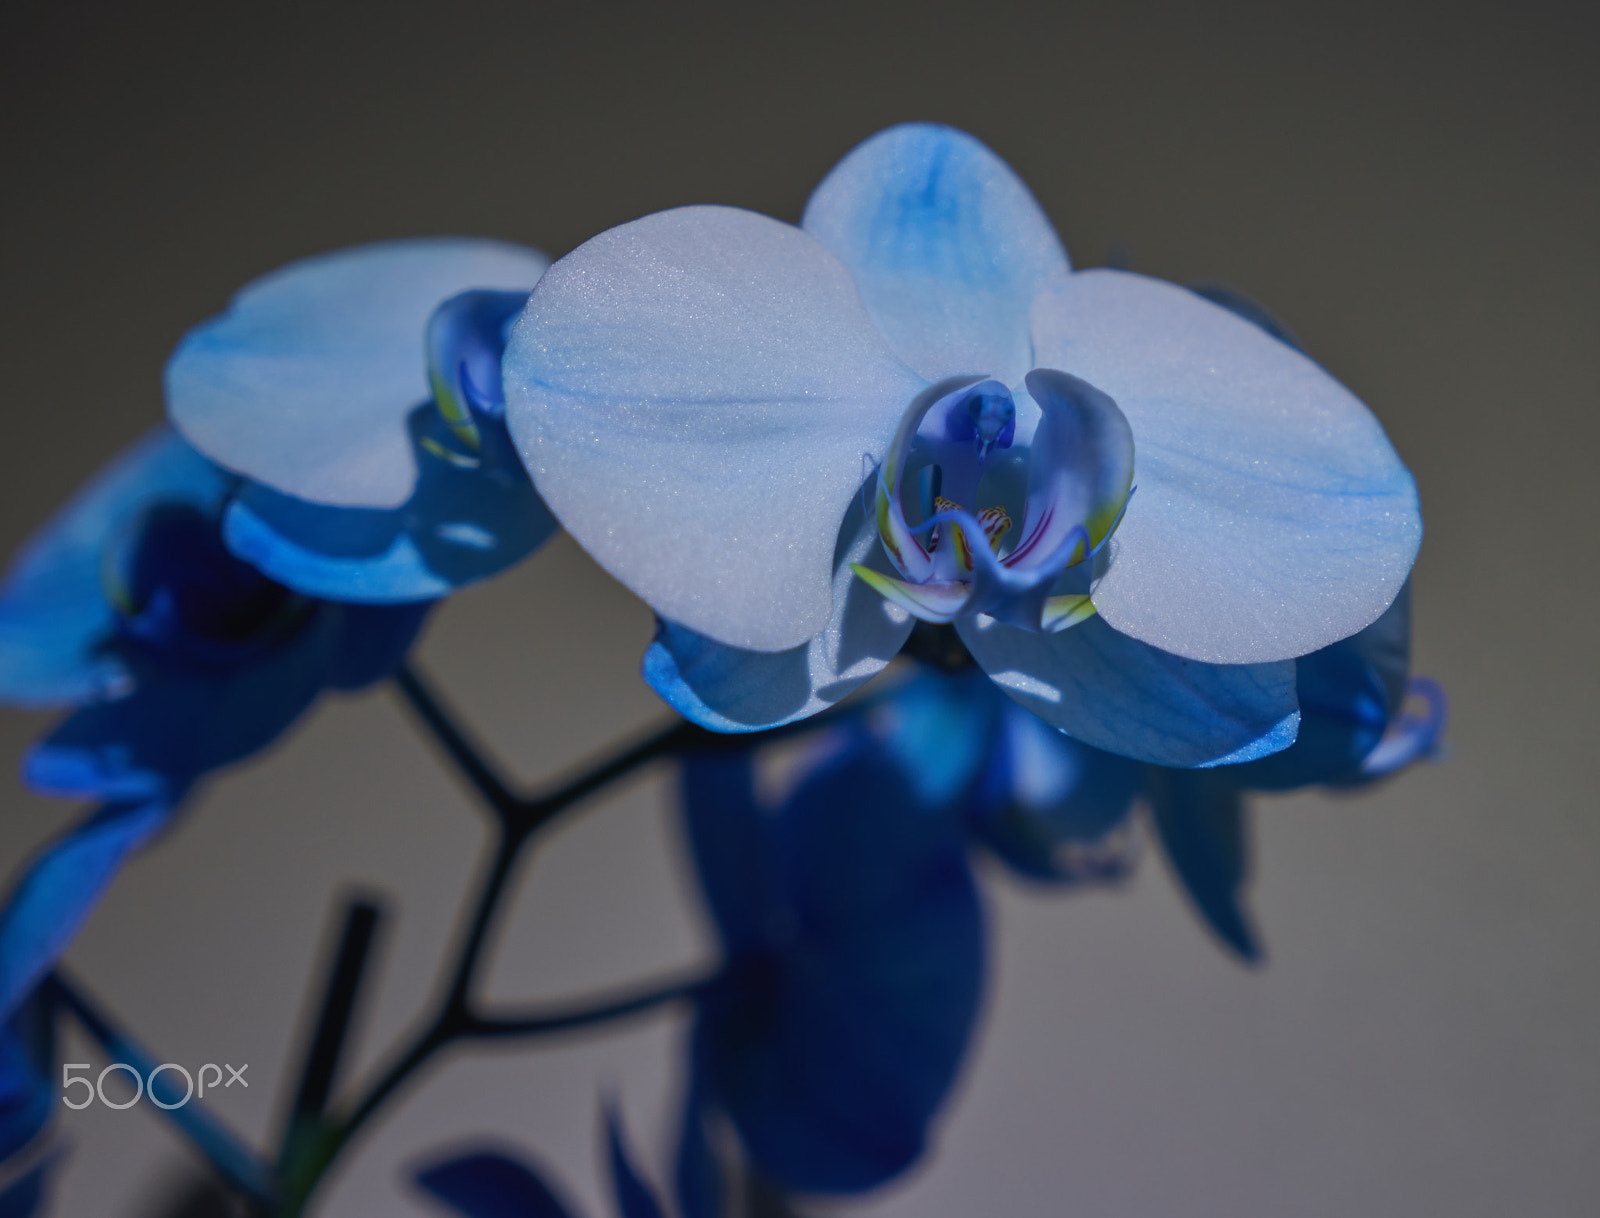 Sony a7 II + Sony Vario Tessar T* FE 24-70mm F4 ZA OSS sample photo. Blue orchid photography